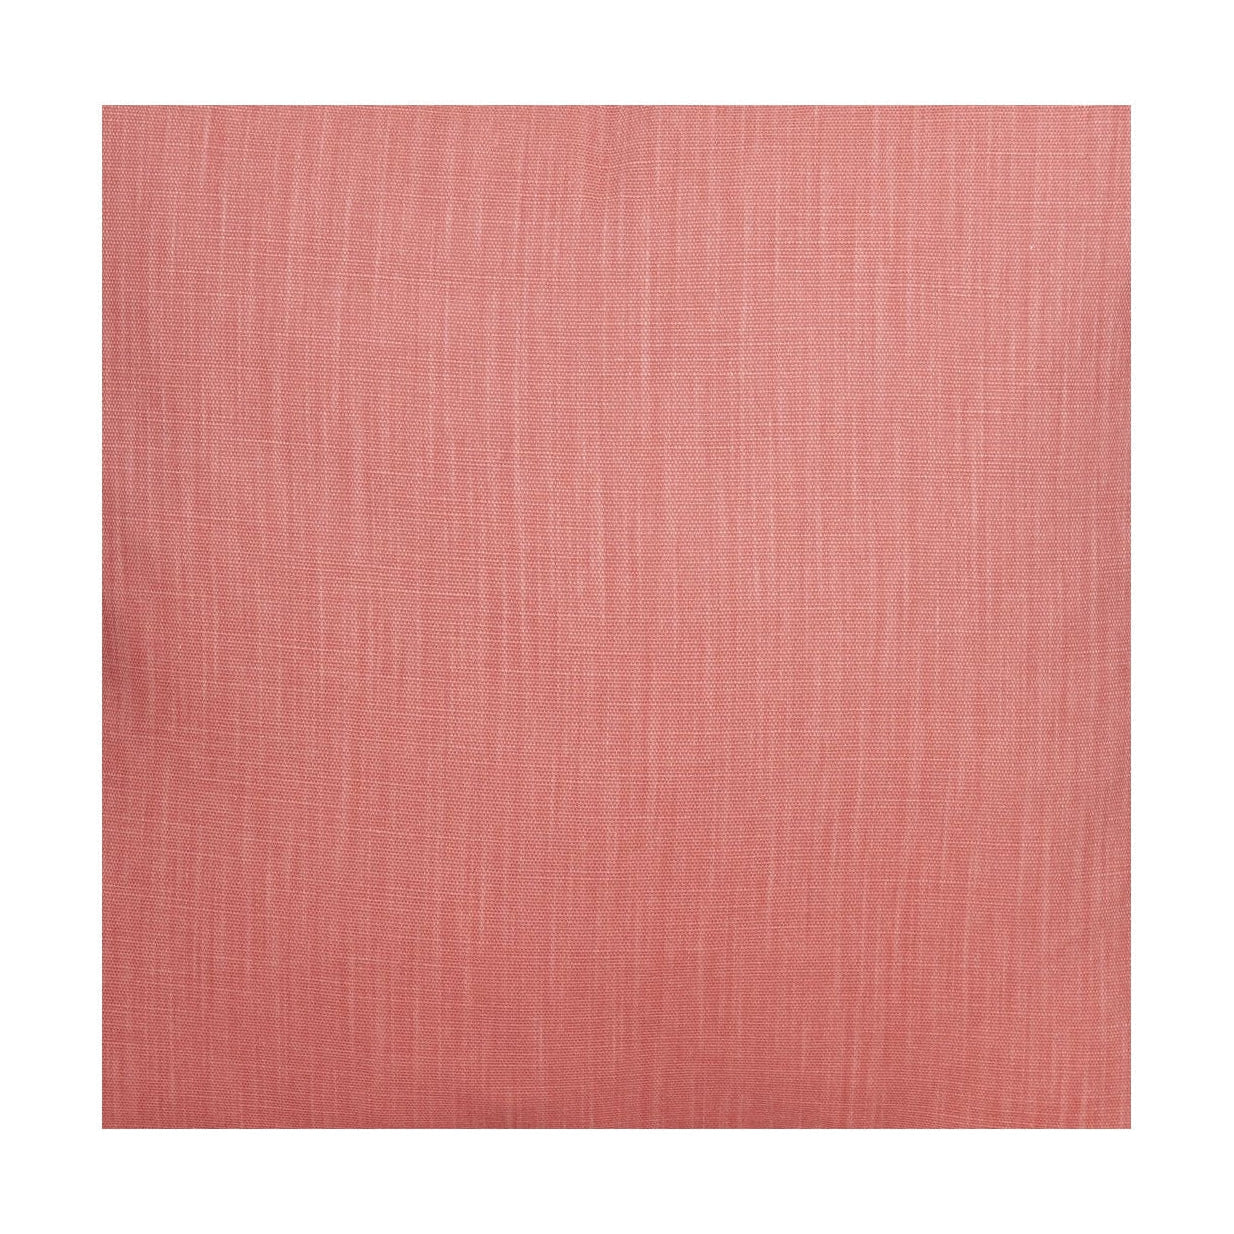 Spira Klotz -stofbreedte 150 cm (prijs per meter), rouge